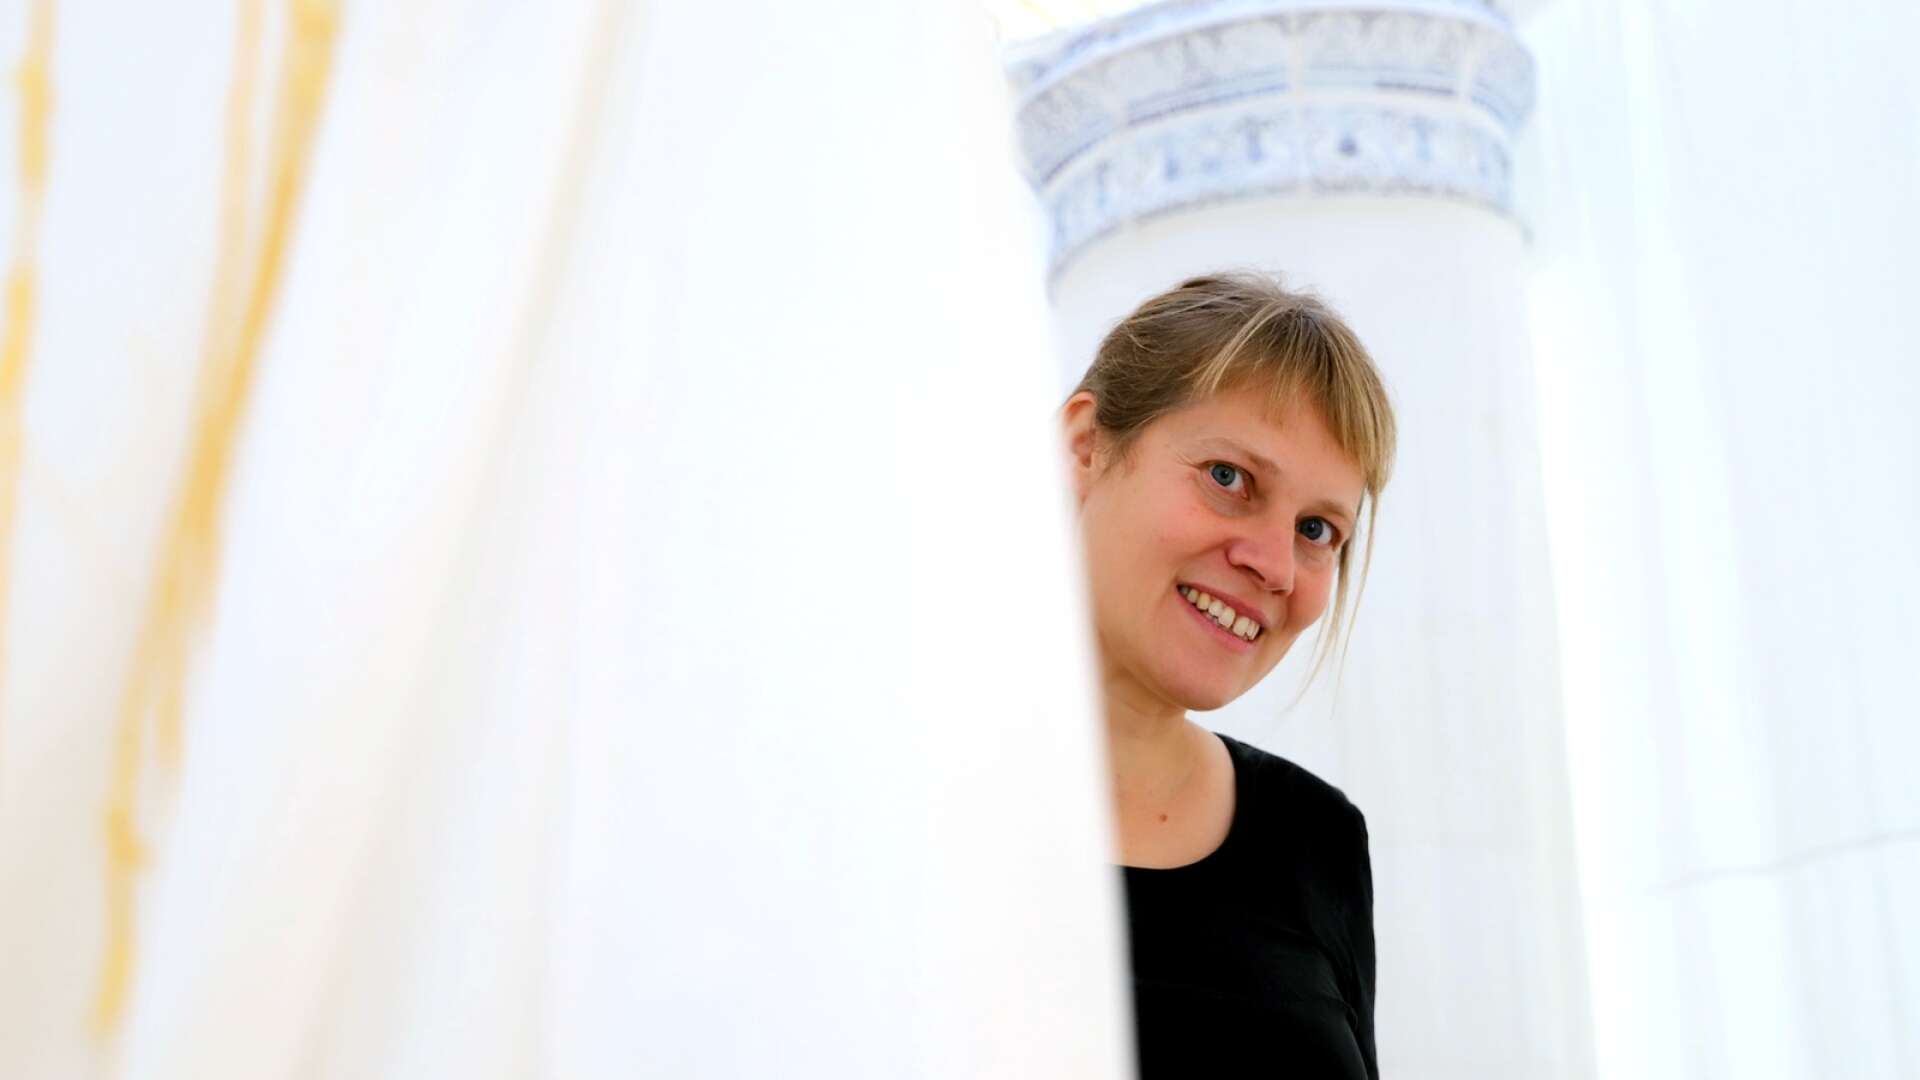 Arvikakonstnären Liv Midbøe är aktuell med utställningen ”Ett eget rum” på  Rackstadmuseet. Den visas från 24 september till den 8 januari.